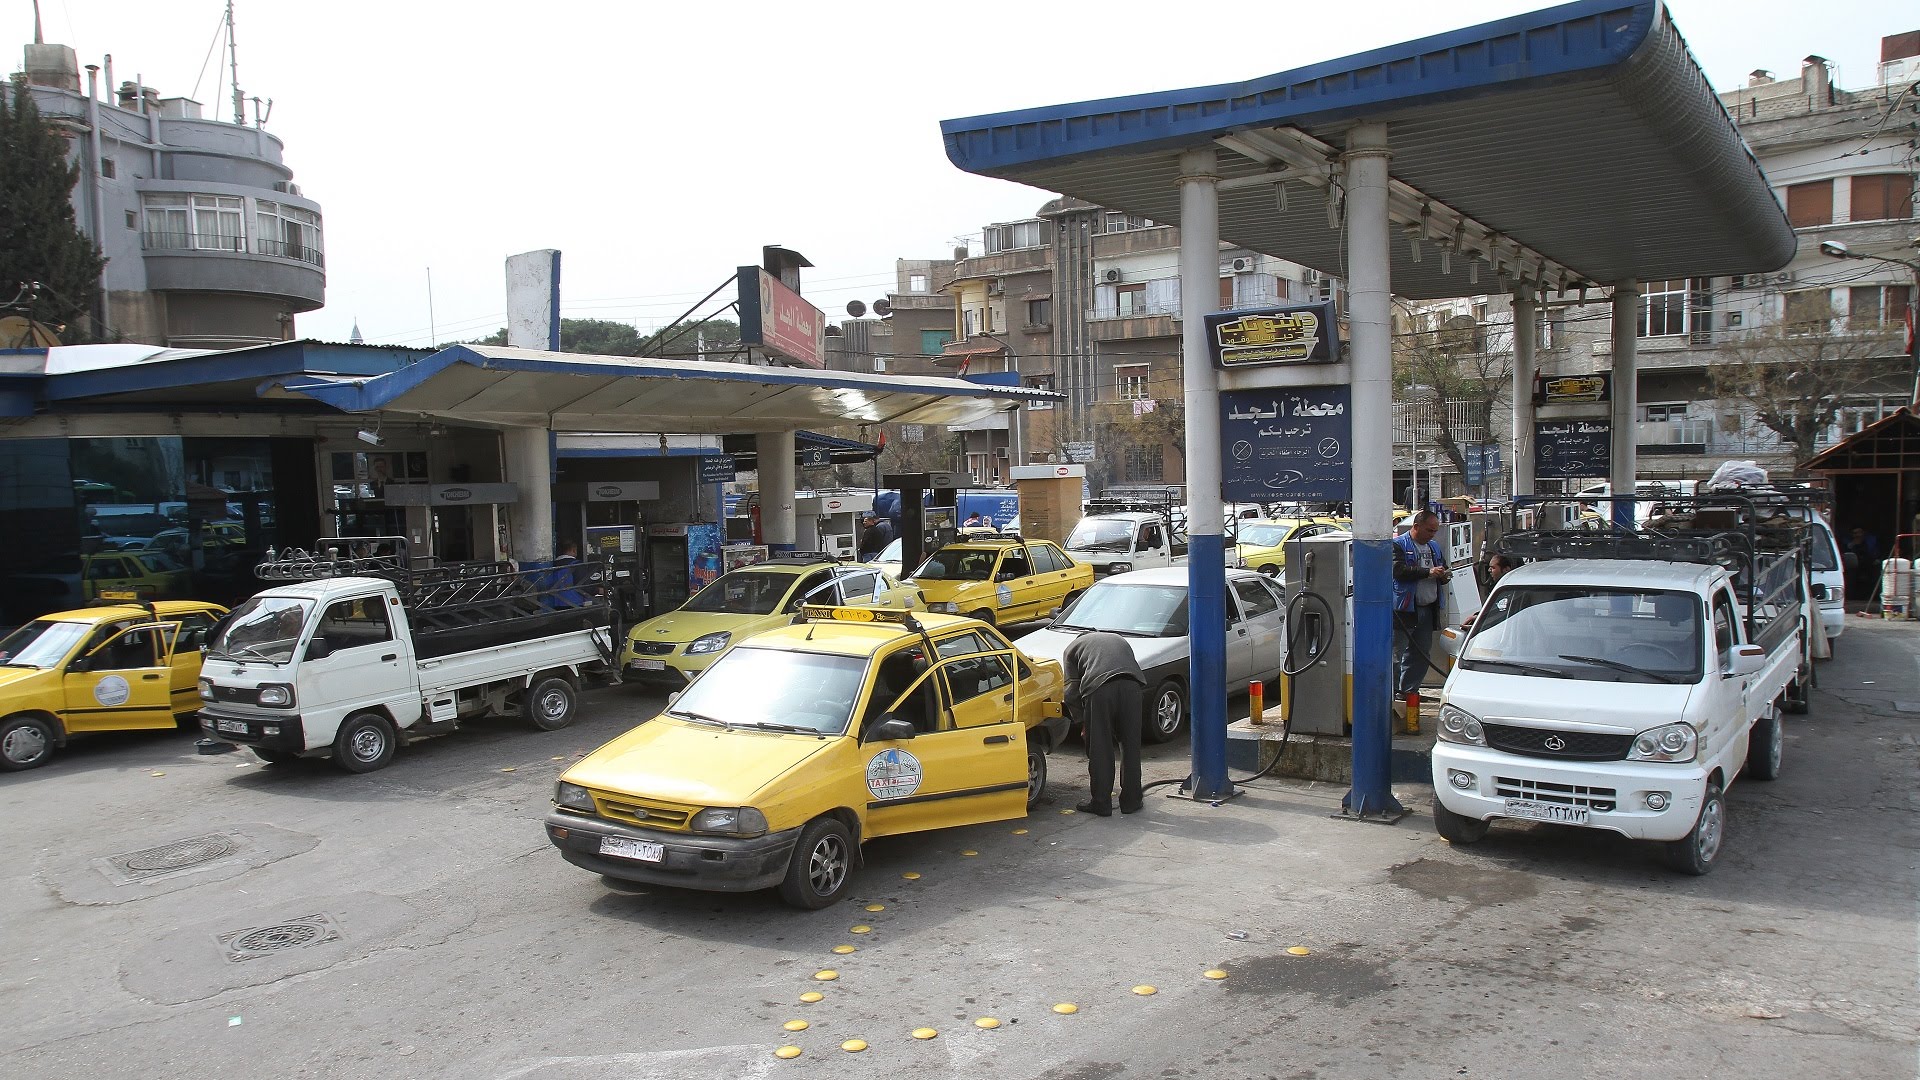 سعر المحروقات كما أعلنته الحكومة السورية| سعر المازوت والبنزين في سوريا 